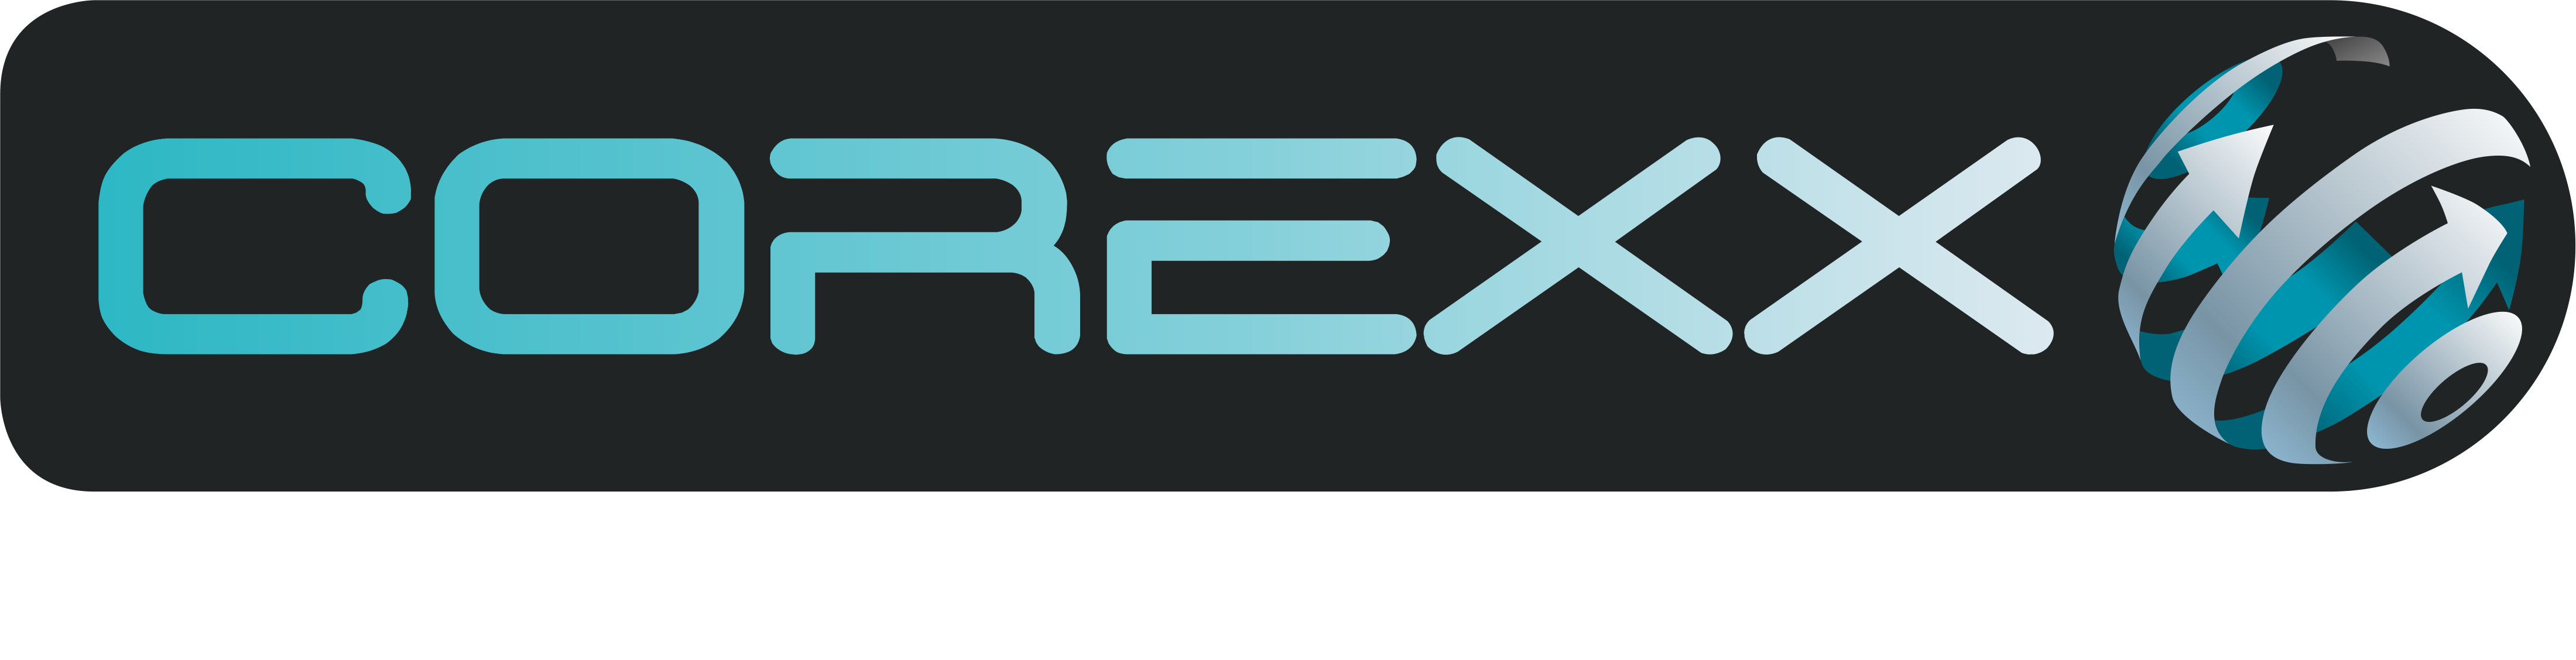 corexx logo